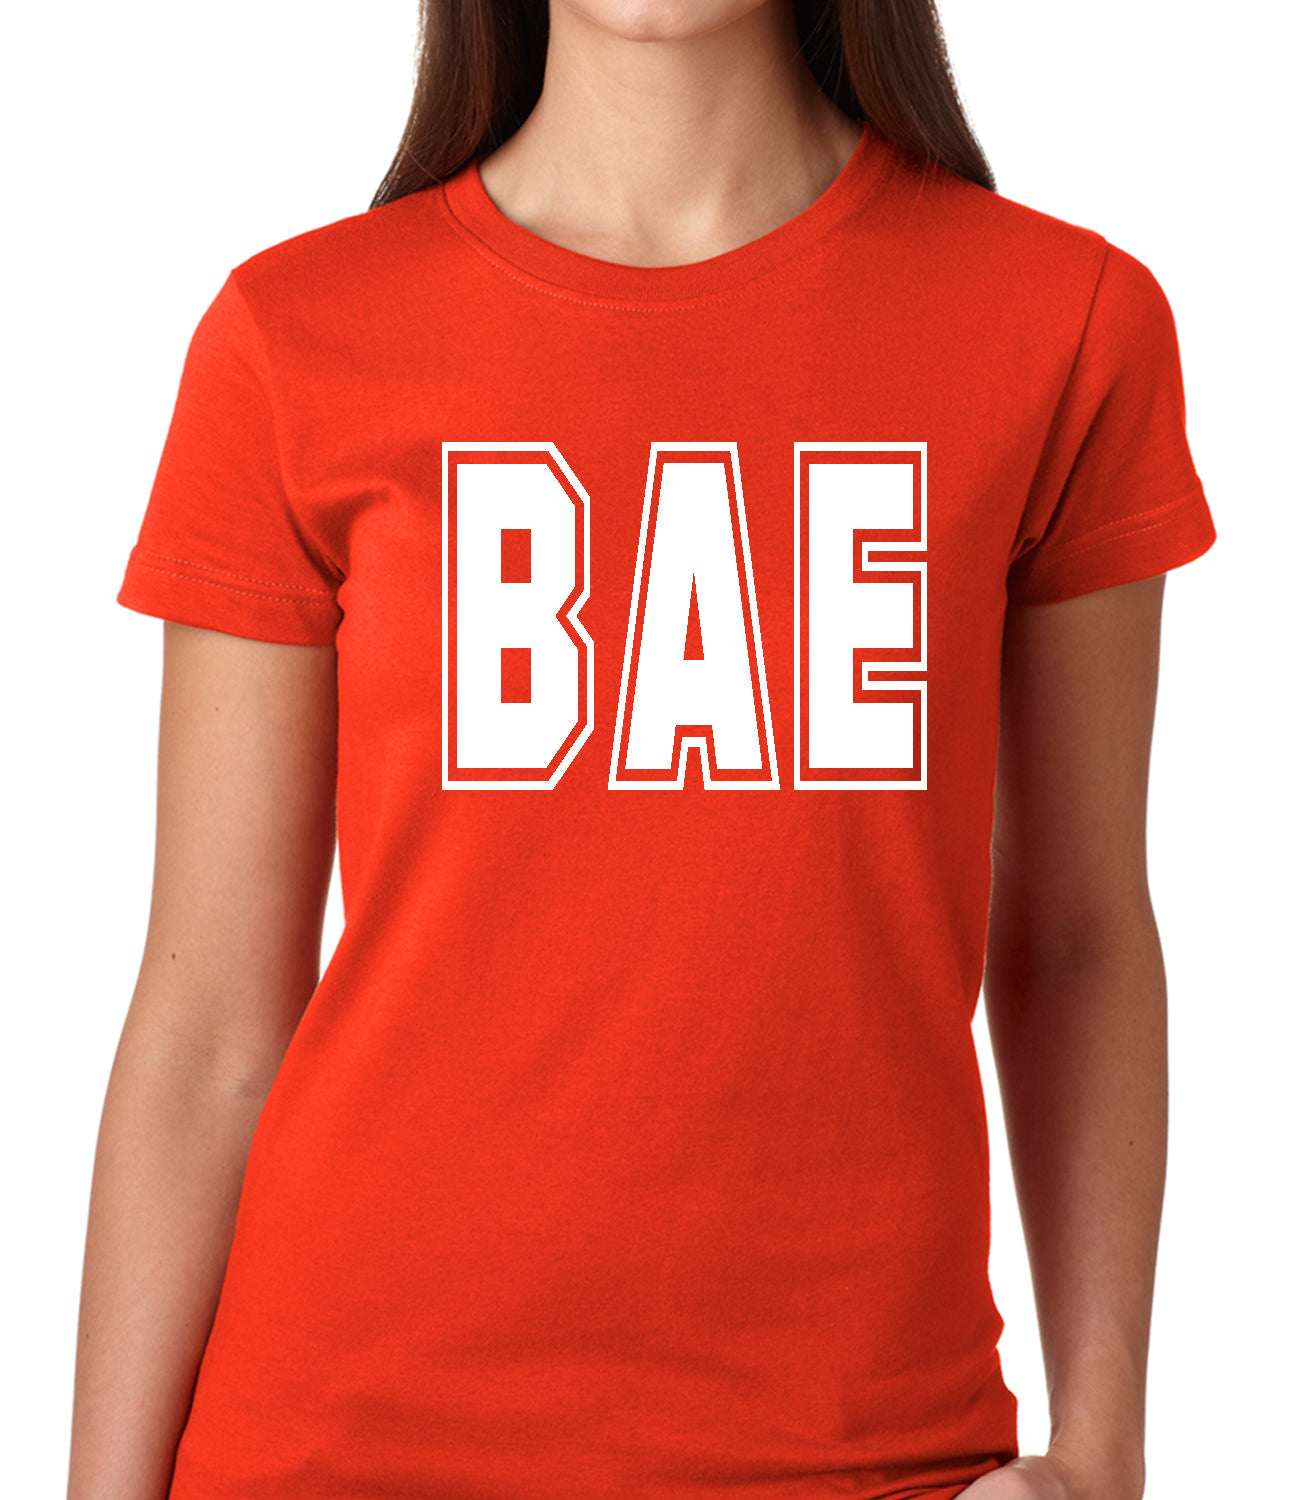 BAE Before All Else Girls T-shirt